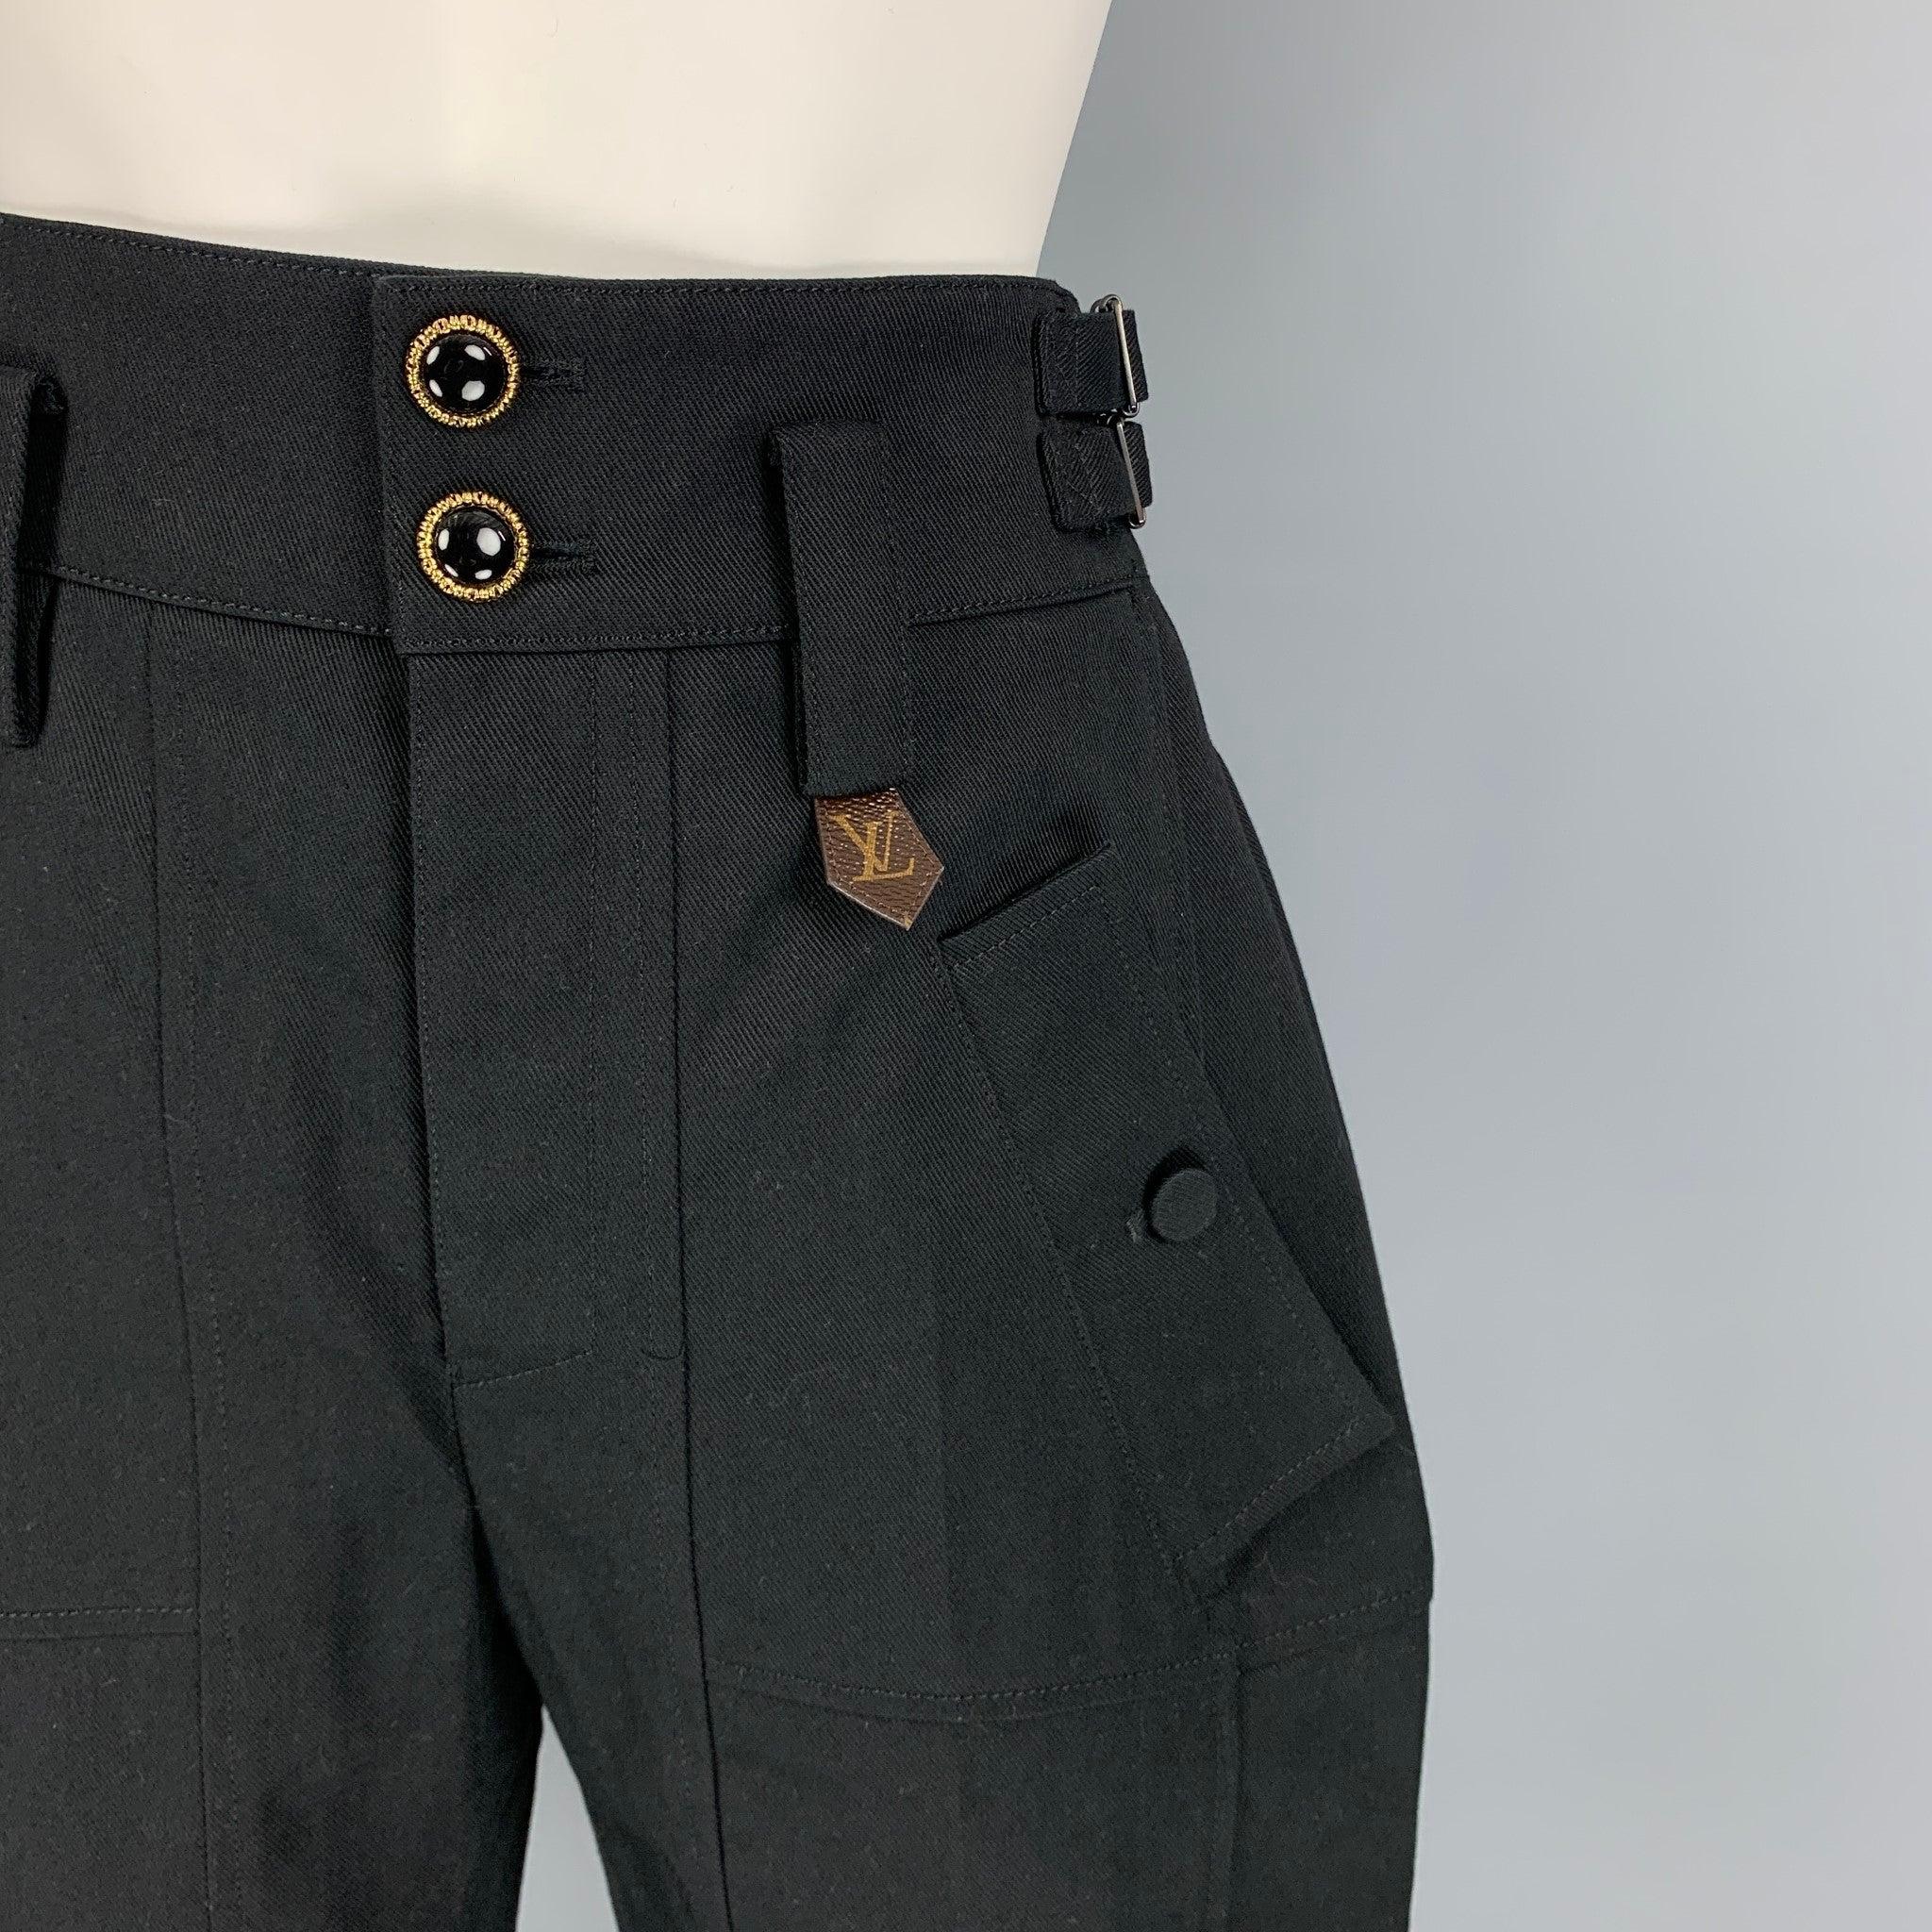 LOUIS VUITTON Hose aus schwarzer Baumwolle/Polyester mit Bermuda-Stil, Logo-Canvas-Besatz, hoher Taille, verstellbaren Seitenlaschen, Vorder- und Rückseite und Knopfverschluss. Hergestellt in Italien.
Neu mit Tags.
 

Markiert:   34 

Abmessungen: 
